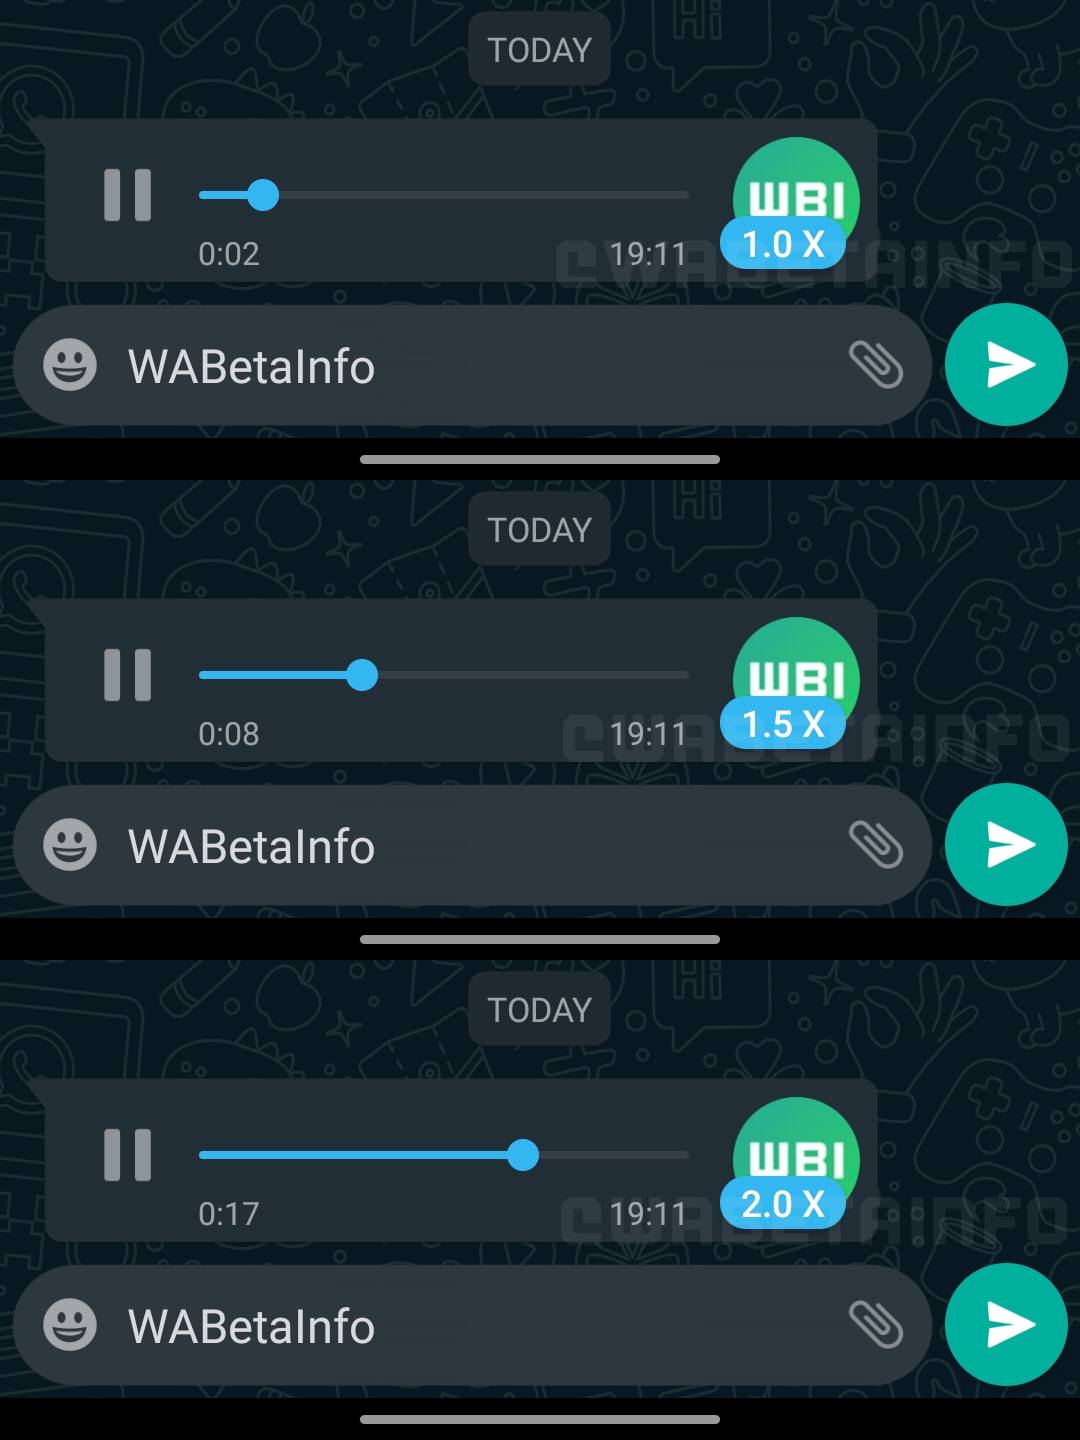 WhatsApp hastighed stemmebeskeder